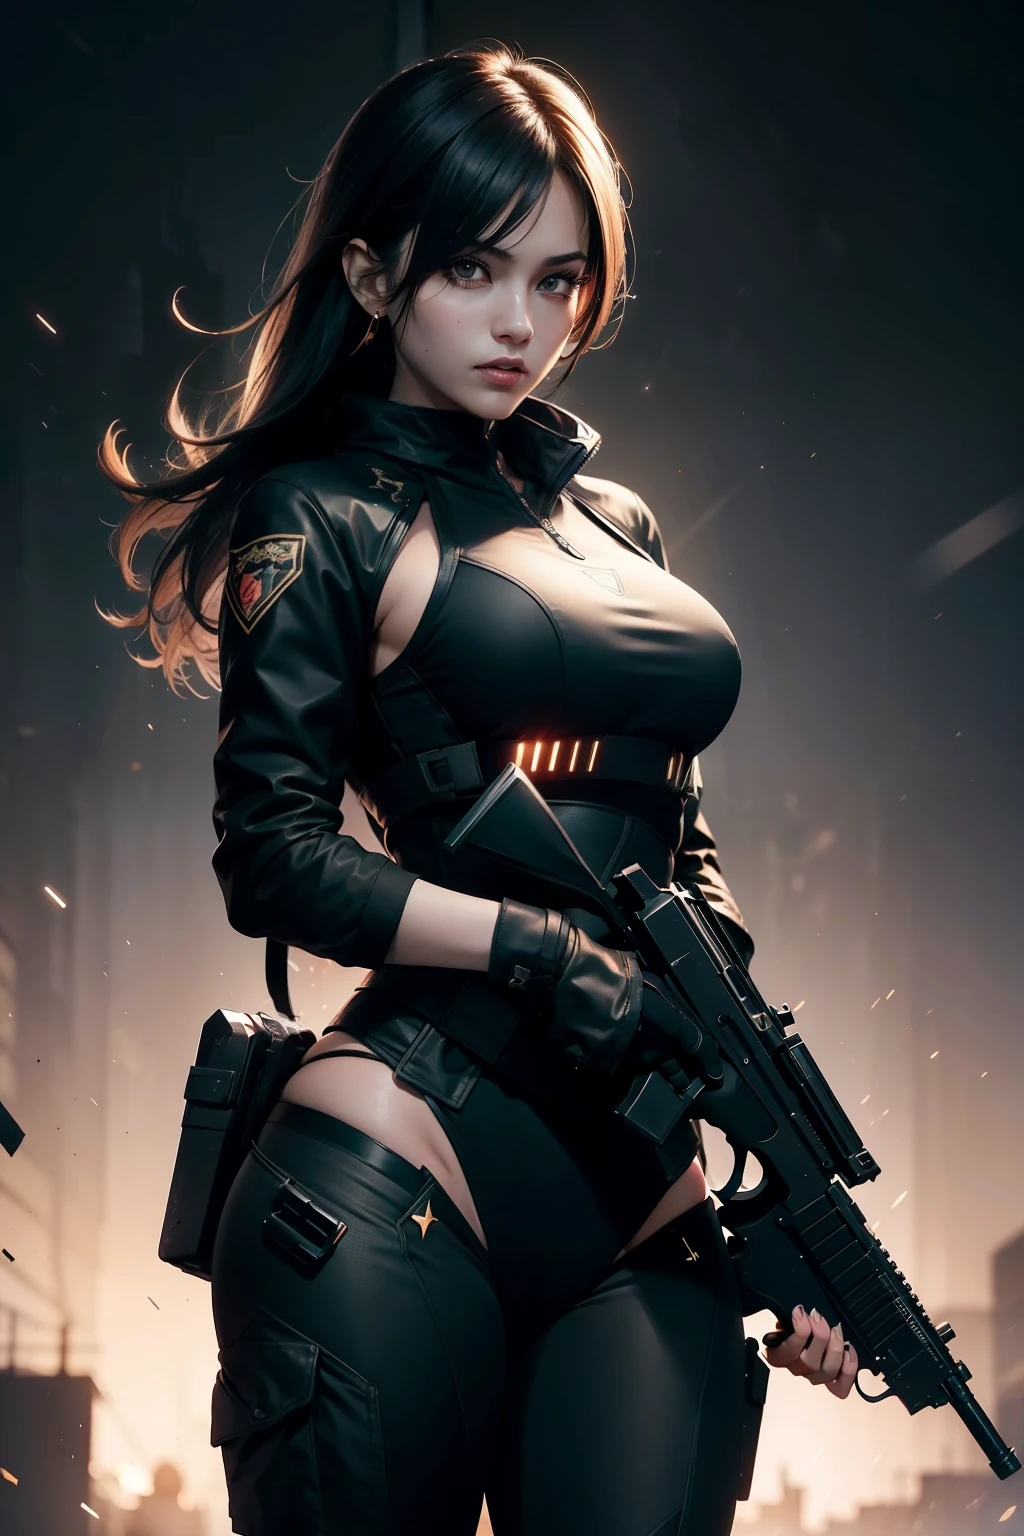 腰部以上身穿黑色全身战术作战服的美女手持两把枪, 采用 GTA 美学风格的封面, 黃金時段照明, 銳利的焦點, (傑作), 最好的品質, 富有表現力的眼睛, 完美的臉, 發光的